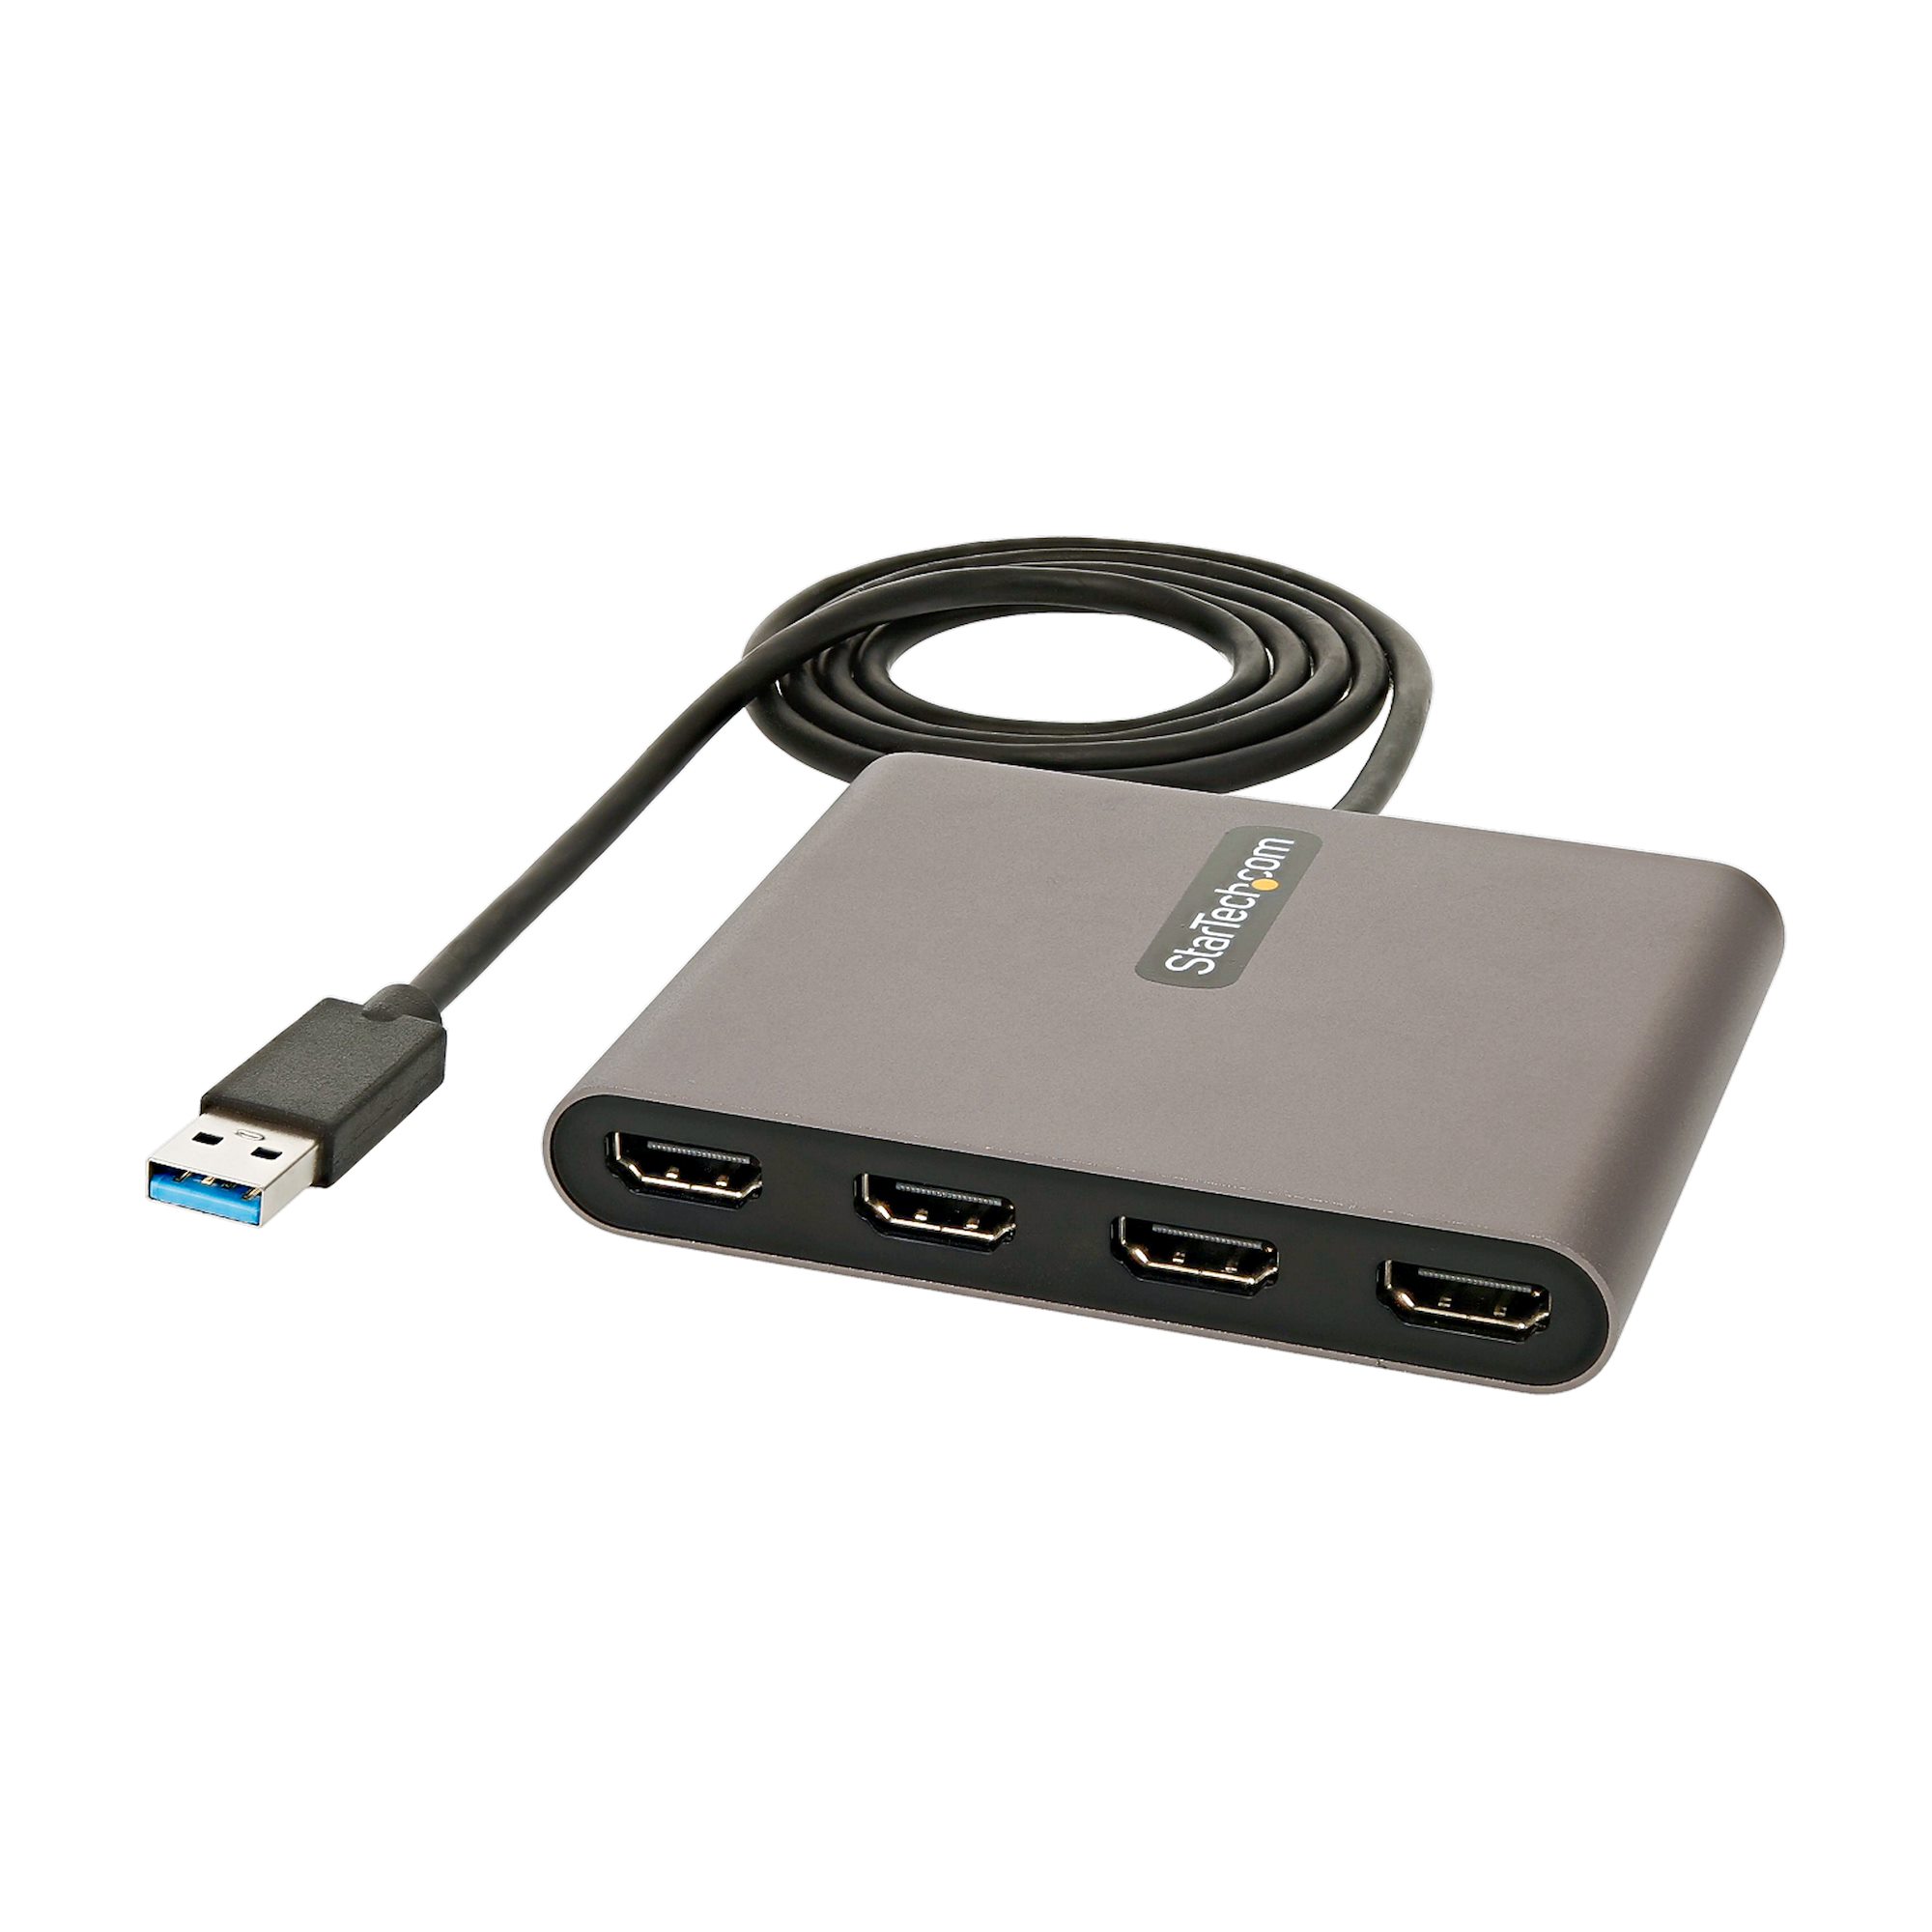 【USB32HD4】USB 3.0 TO 4X HDMI ADAPTER - 108